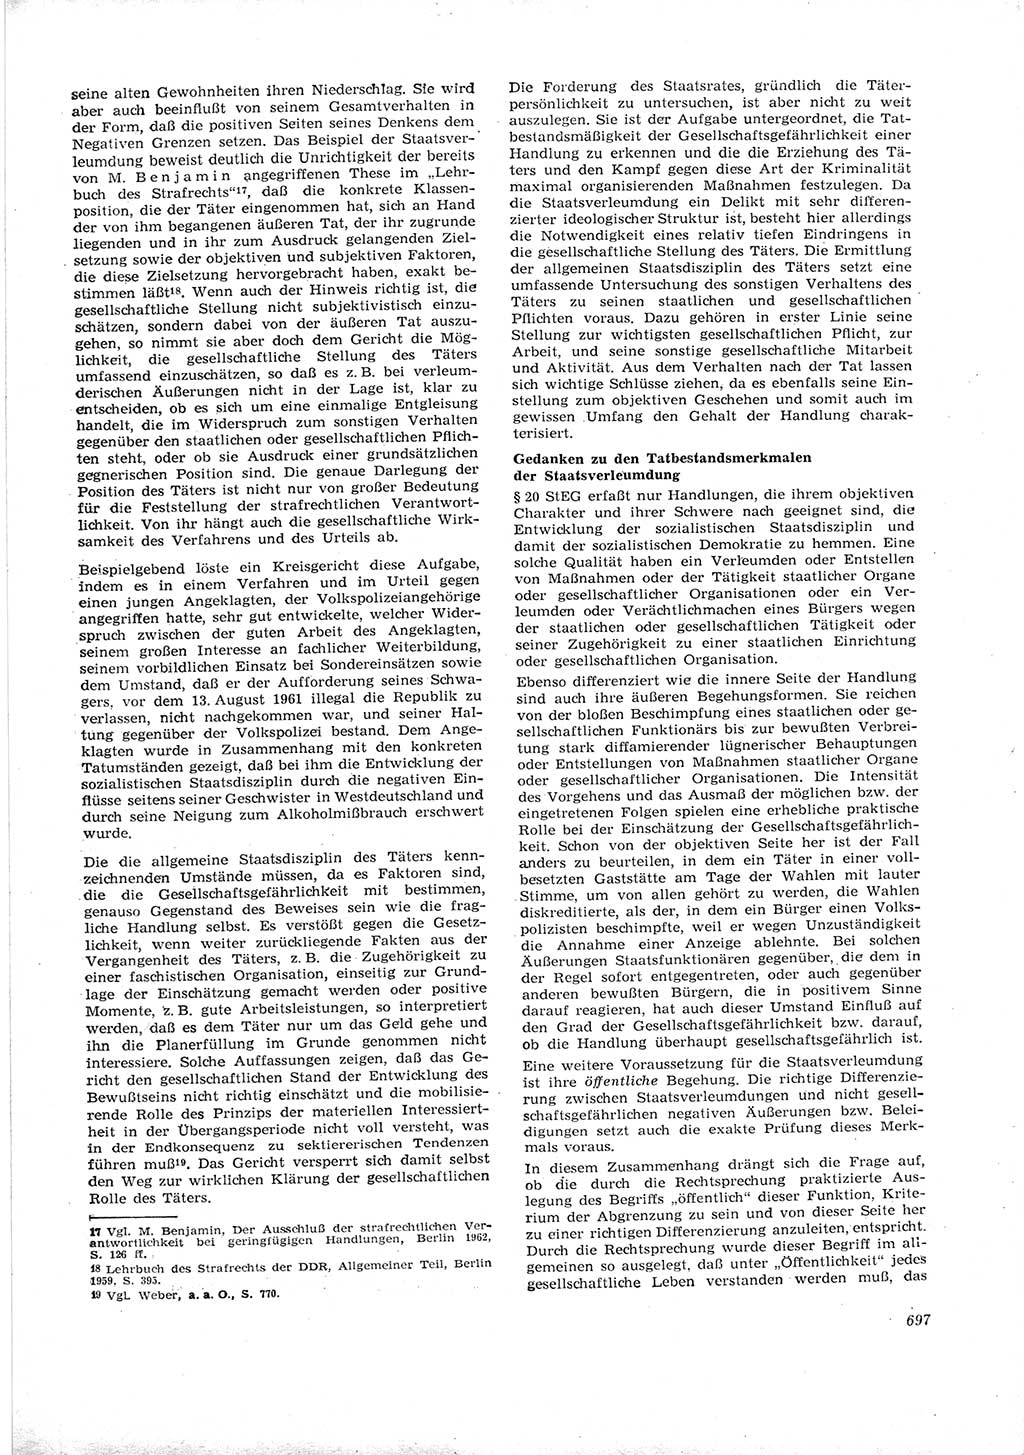 Neue Justiz (NJ), Zeitschrift für Recht und Rechtswissenschaft [Deutsche Demokratische Republik (DDR)], 16. Jahrgang 1962, Seite 697 (NJ DDR 1962, S. 697)